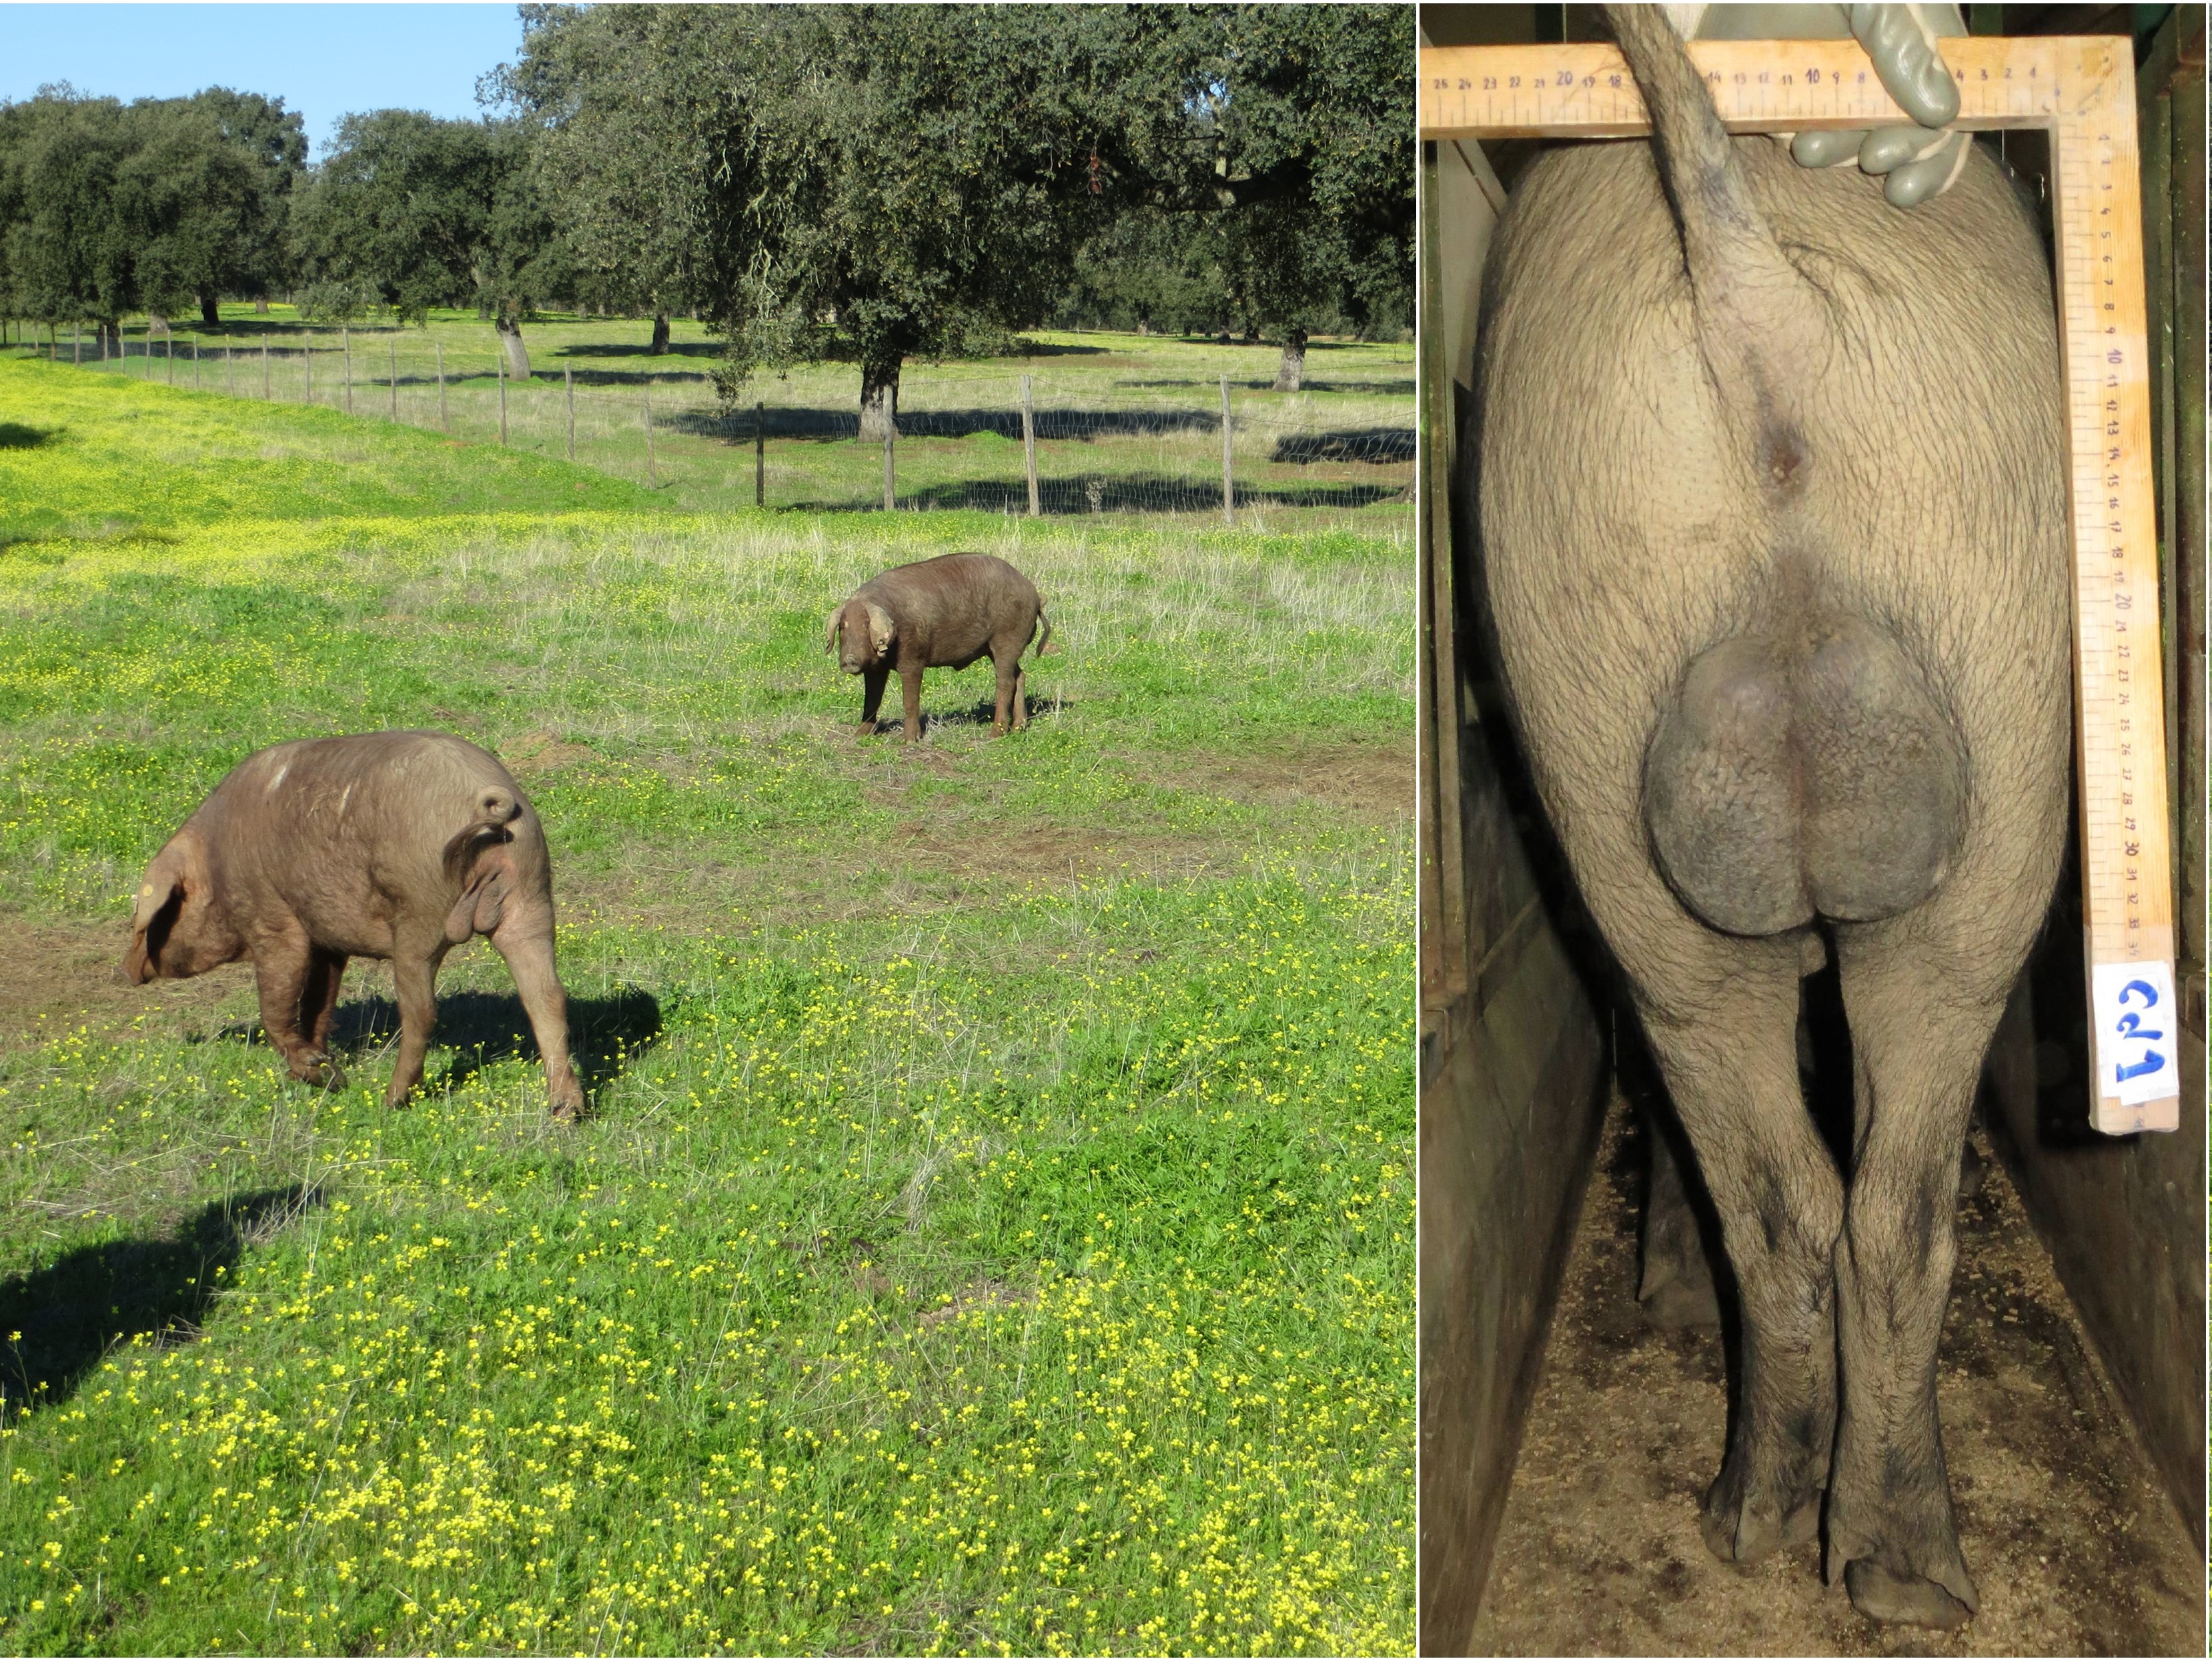 Machos de cerdo Ibérico inmunocastrados (izquierda) al inicio de la montanera en la Finca Valdesequera y macho entero (derecha) de la misma raza y edad para comparación de tamaño testicular